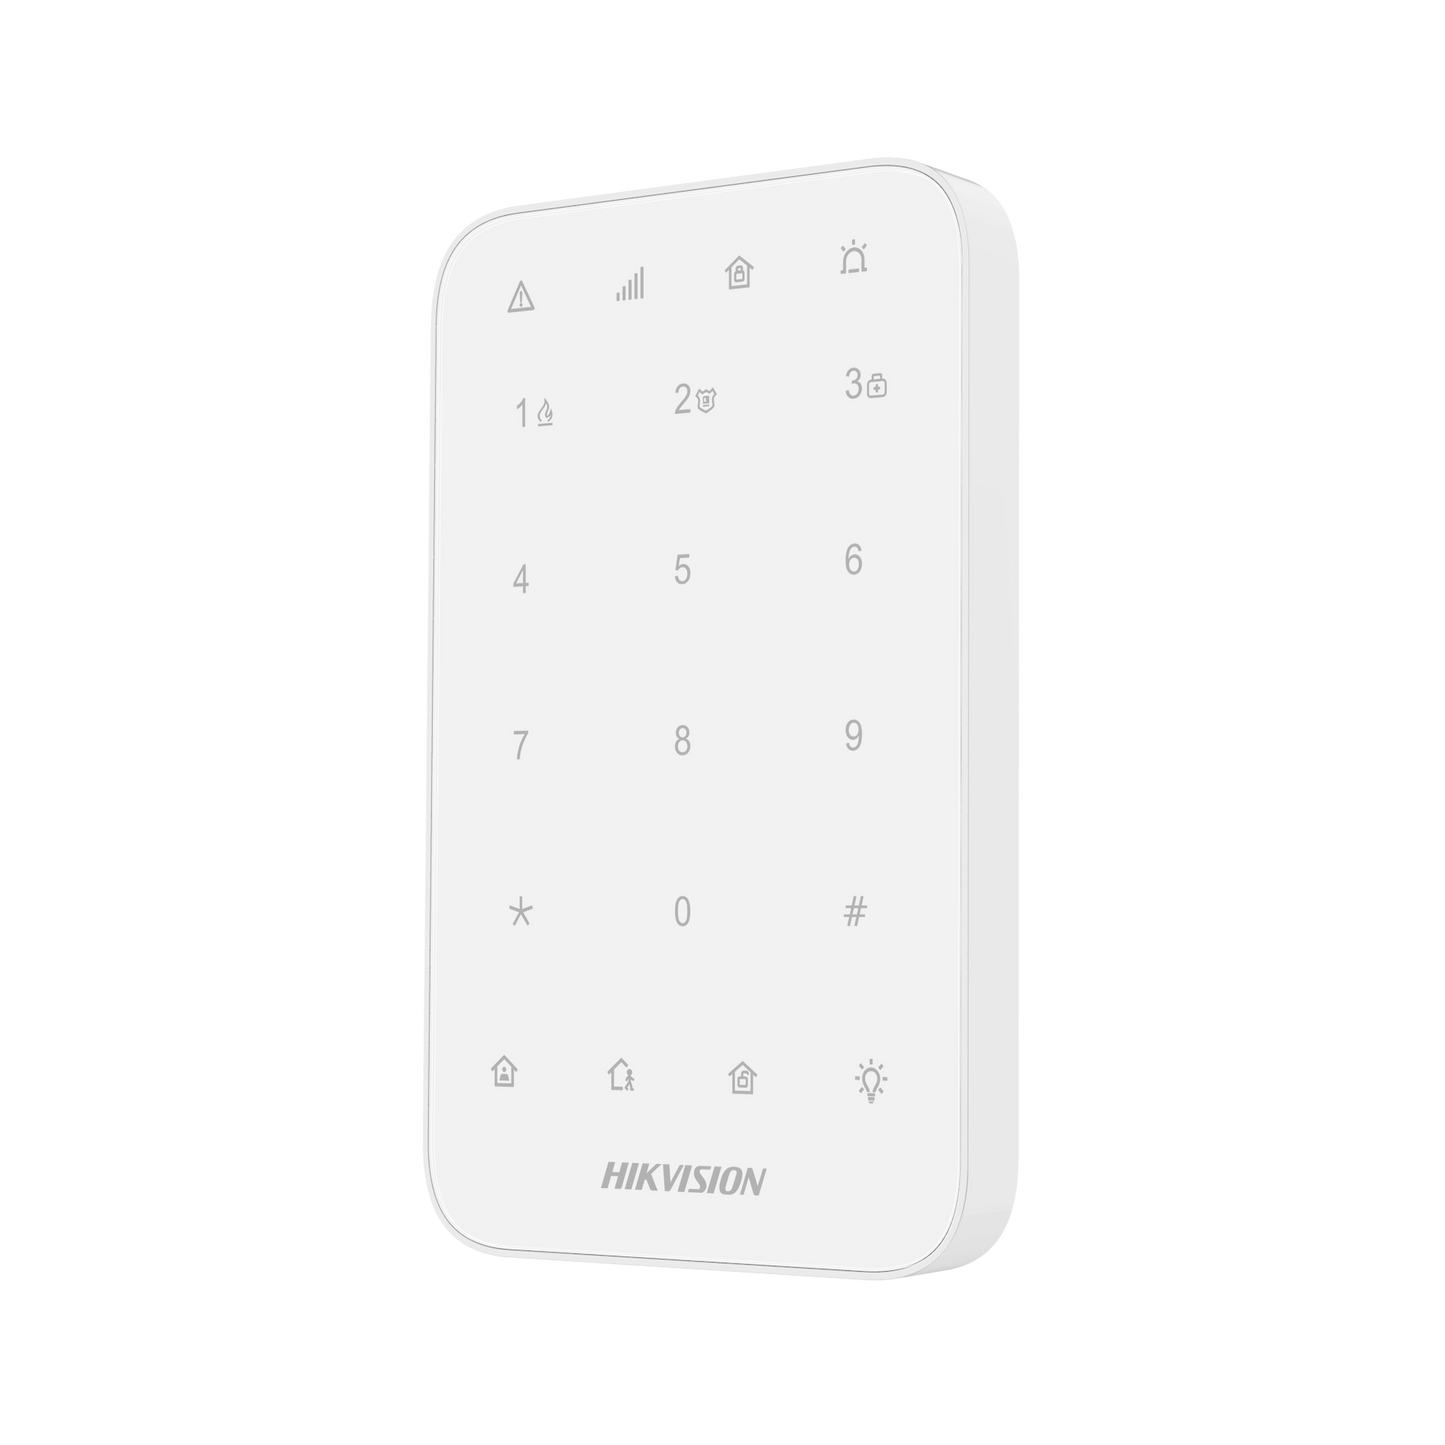 (AX PRO) Wireless Keypad for AXPRO Alarm Panel